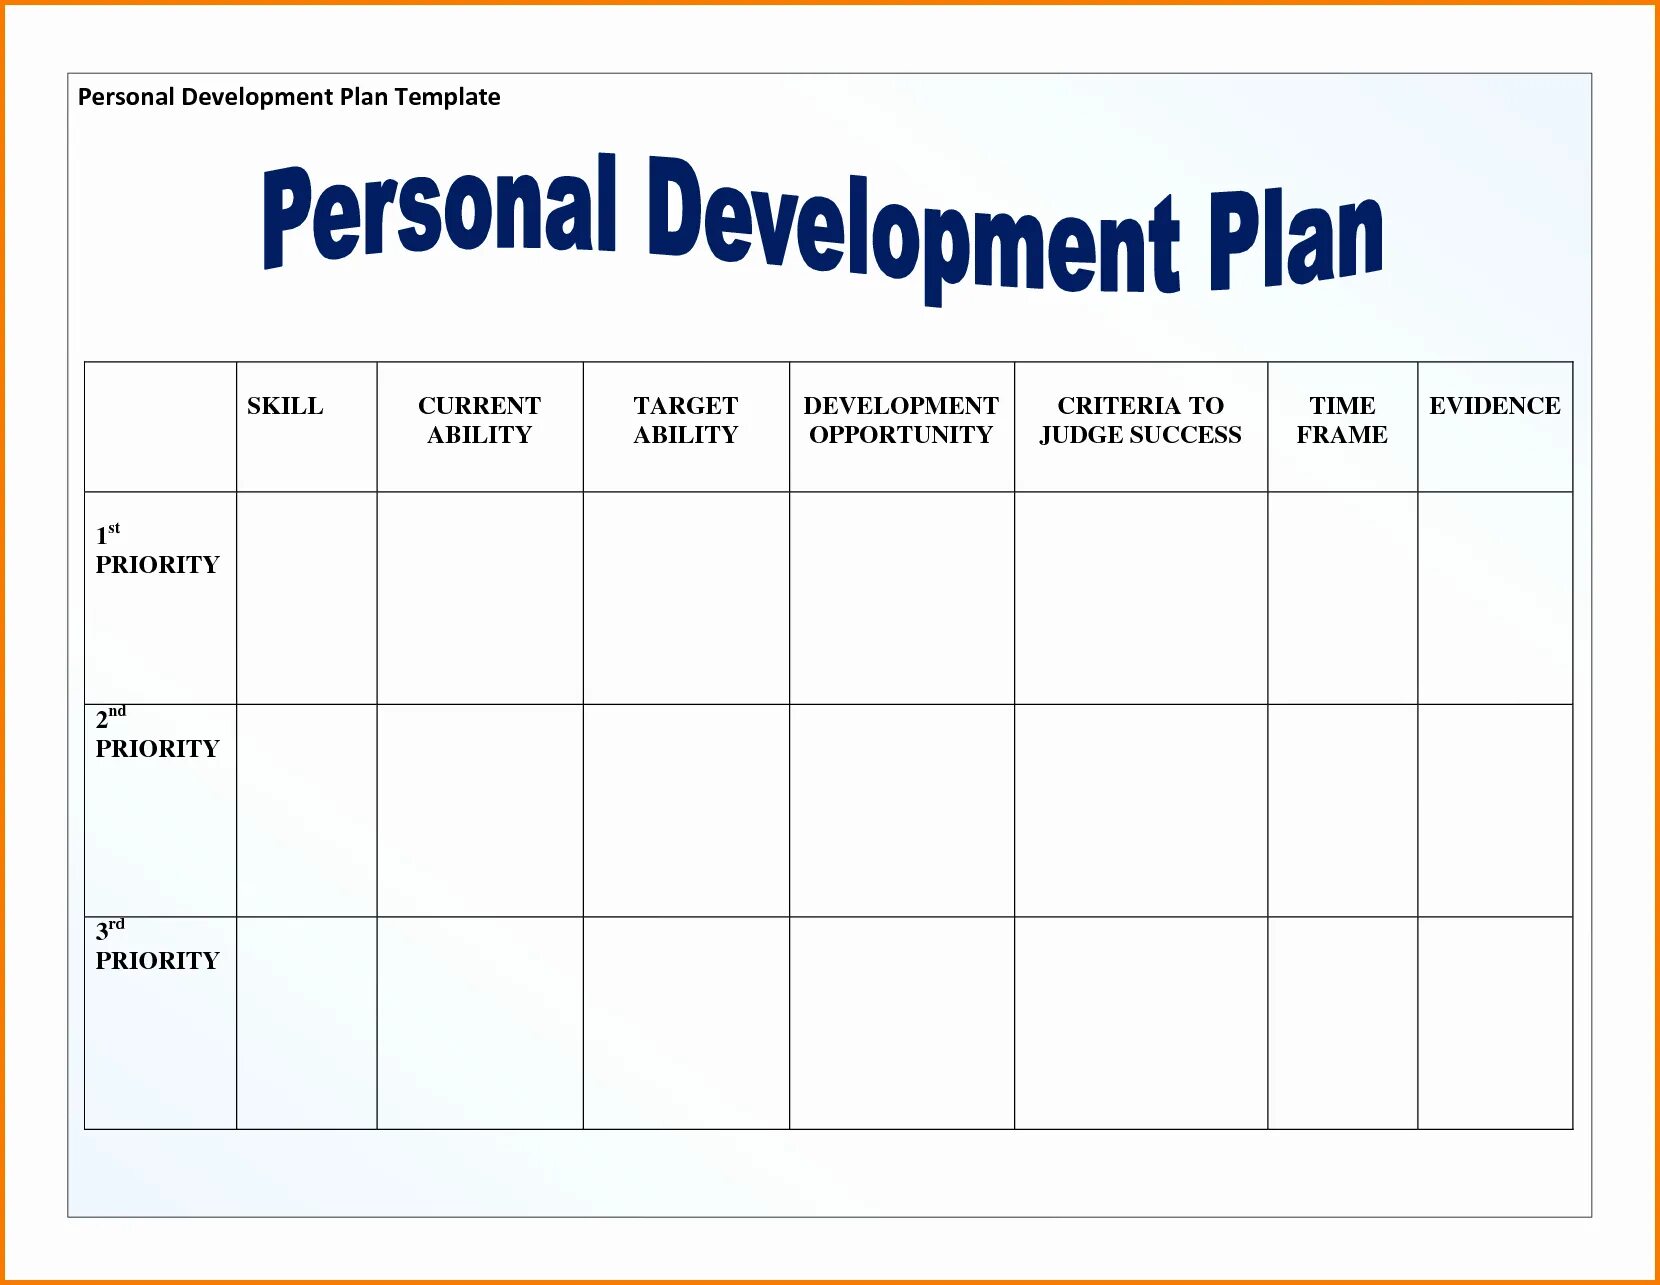 Develop person. Personal Development Plan. Personal Development Plan пример. PDP personal Development Plan. Development Plan example.